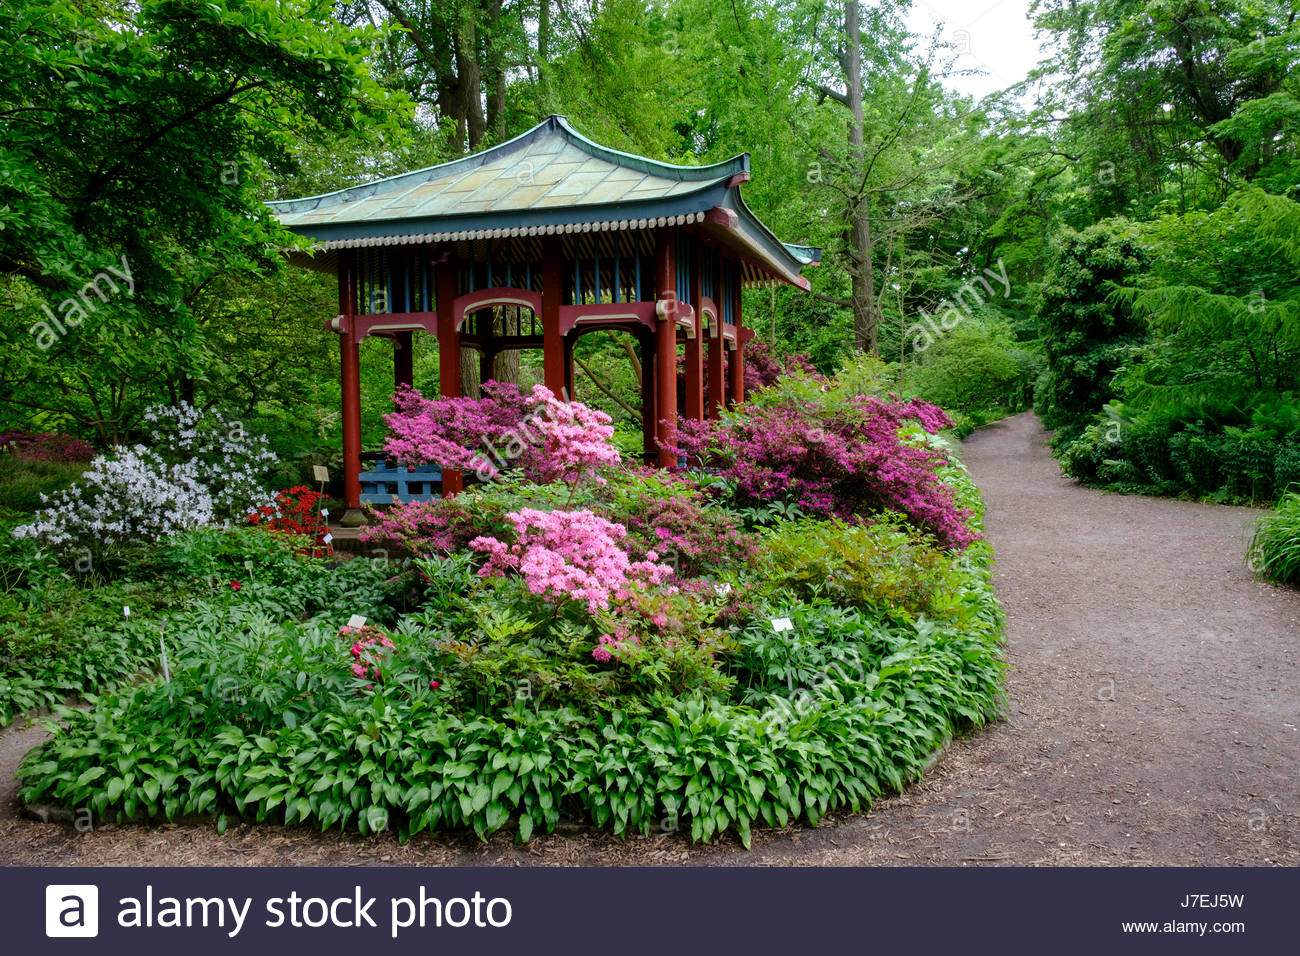 asiatischen stil pavillon im berliner botanischen garten in dahlem berlin deutschland j7ej5w